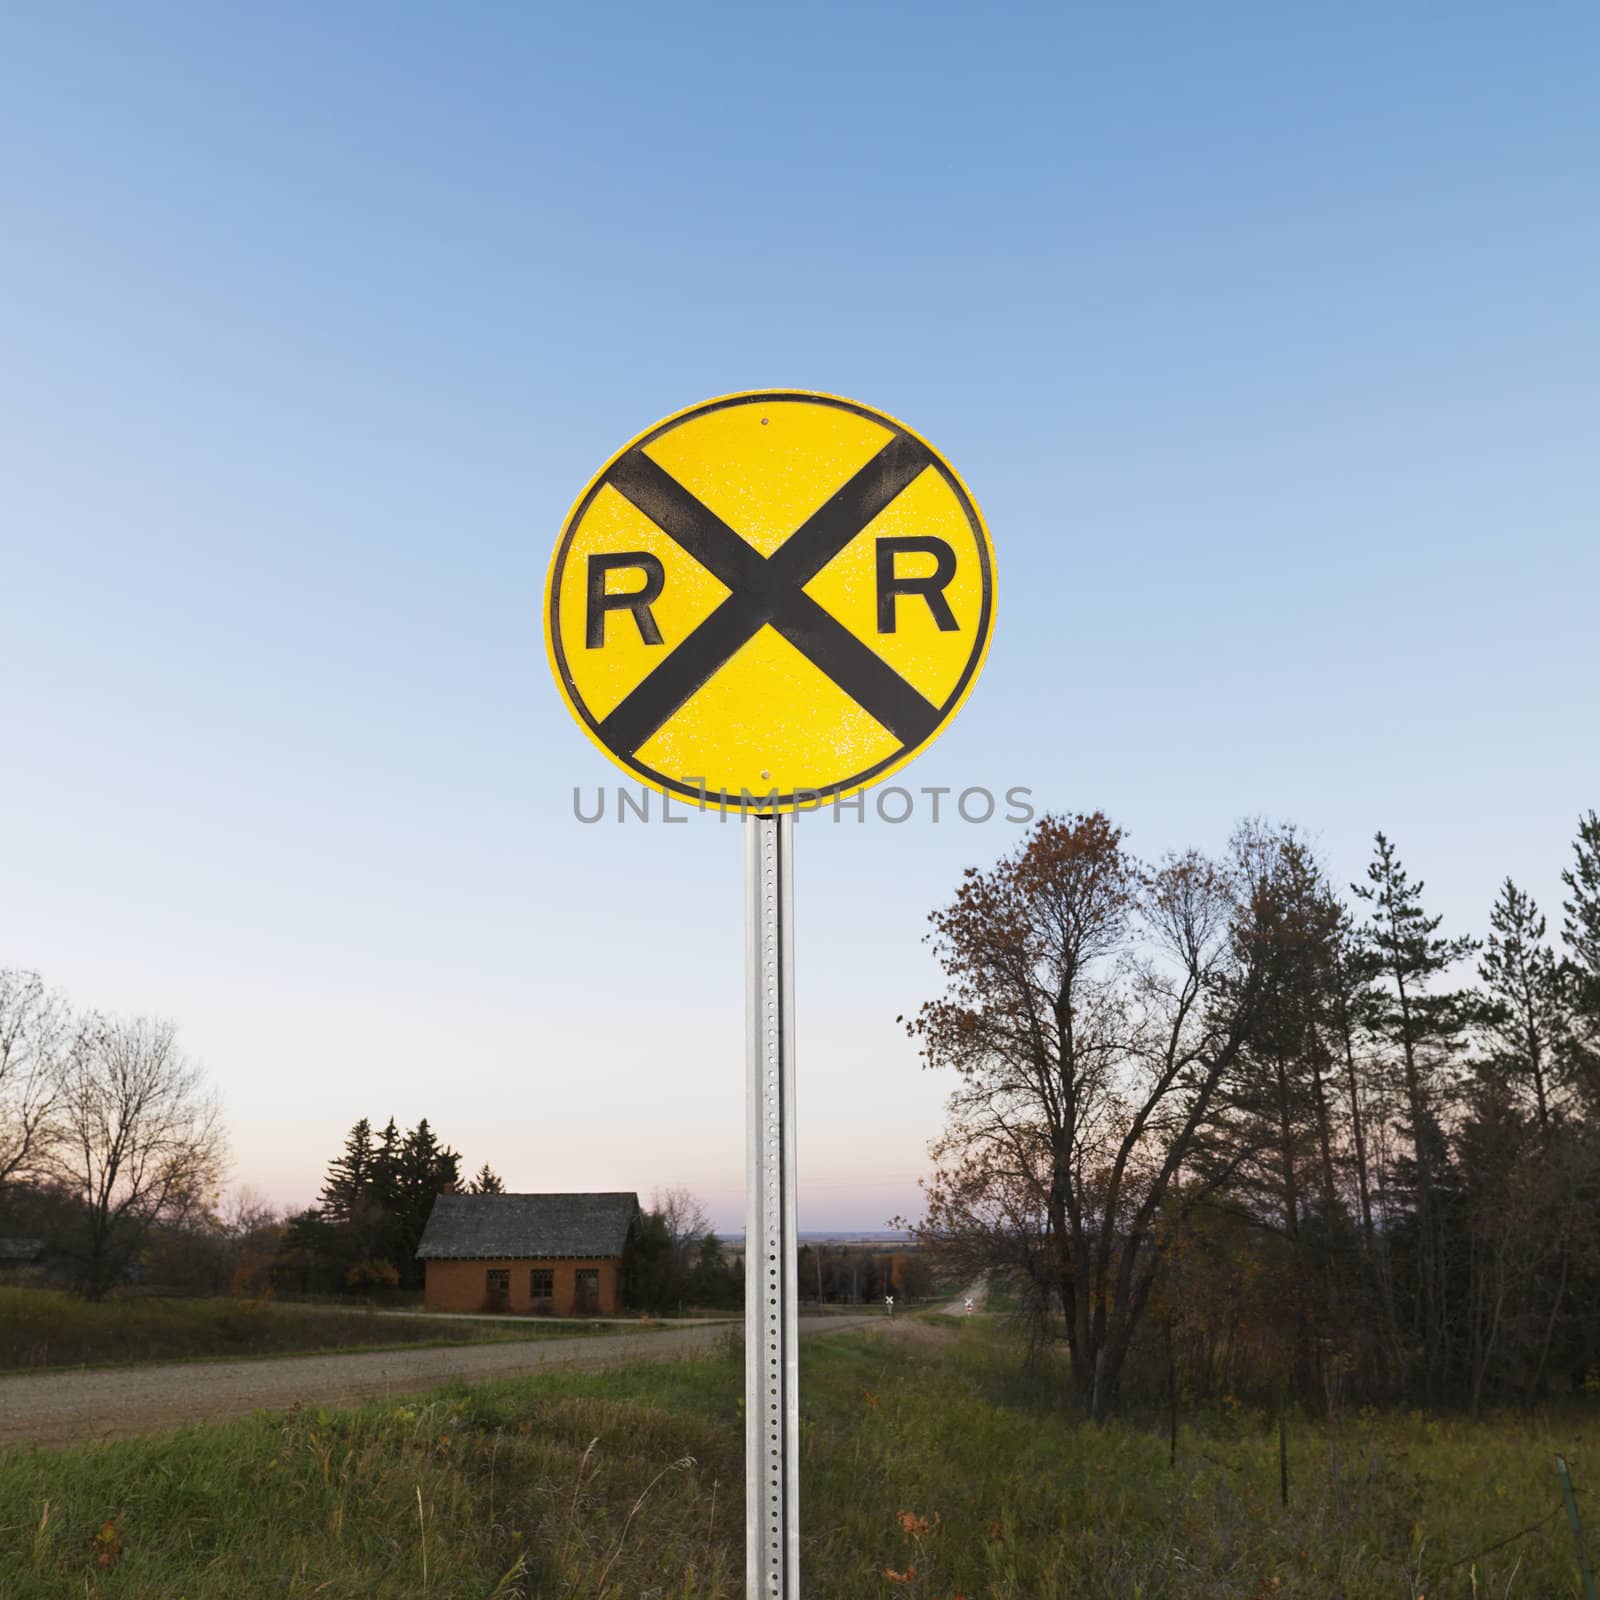 Circular yellow railroad grade crossing sign in rural setting.